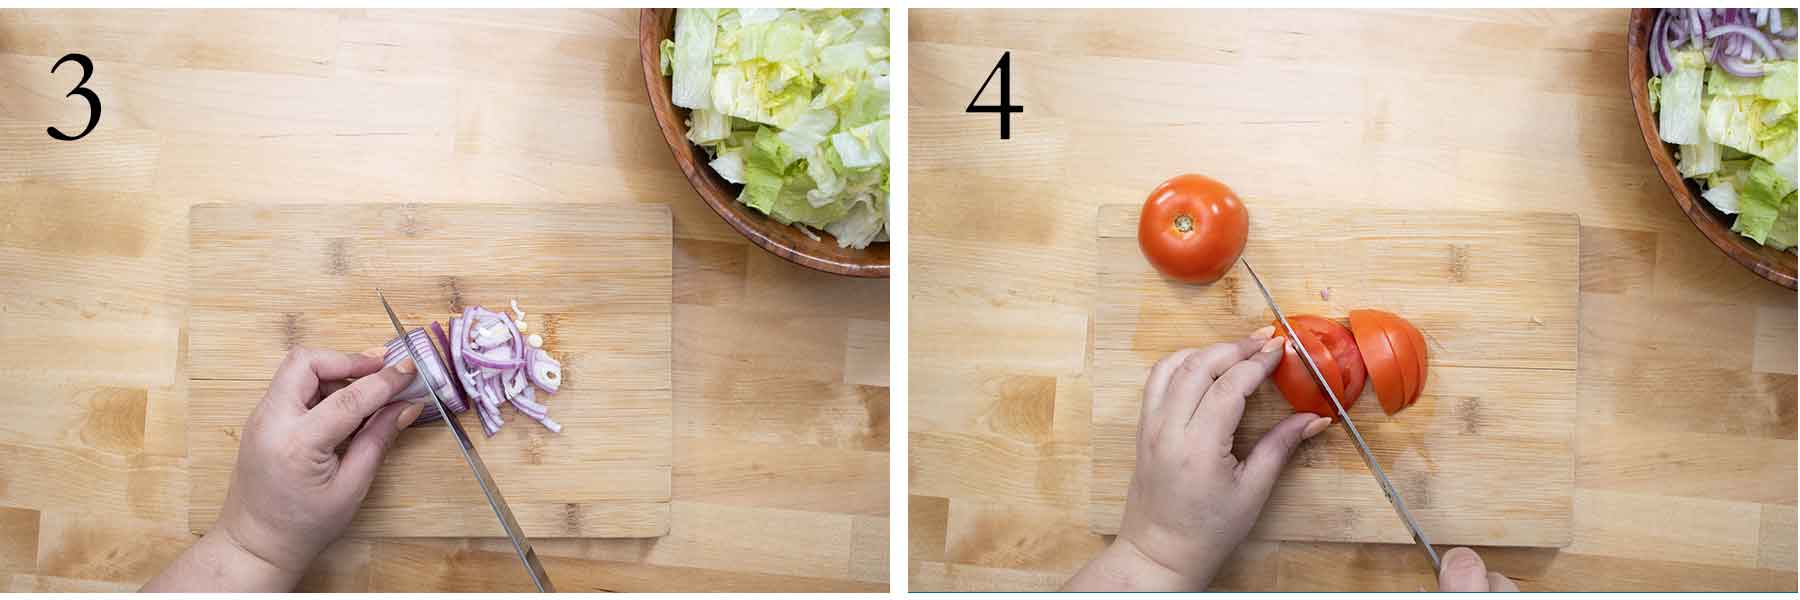 pasos 3 y 4 de como se hace una simple ensalada verde.